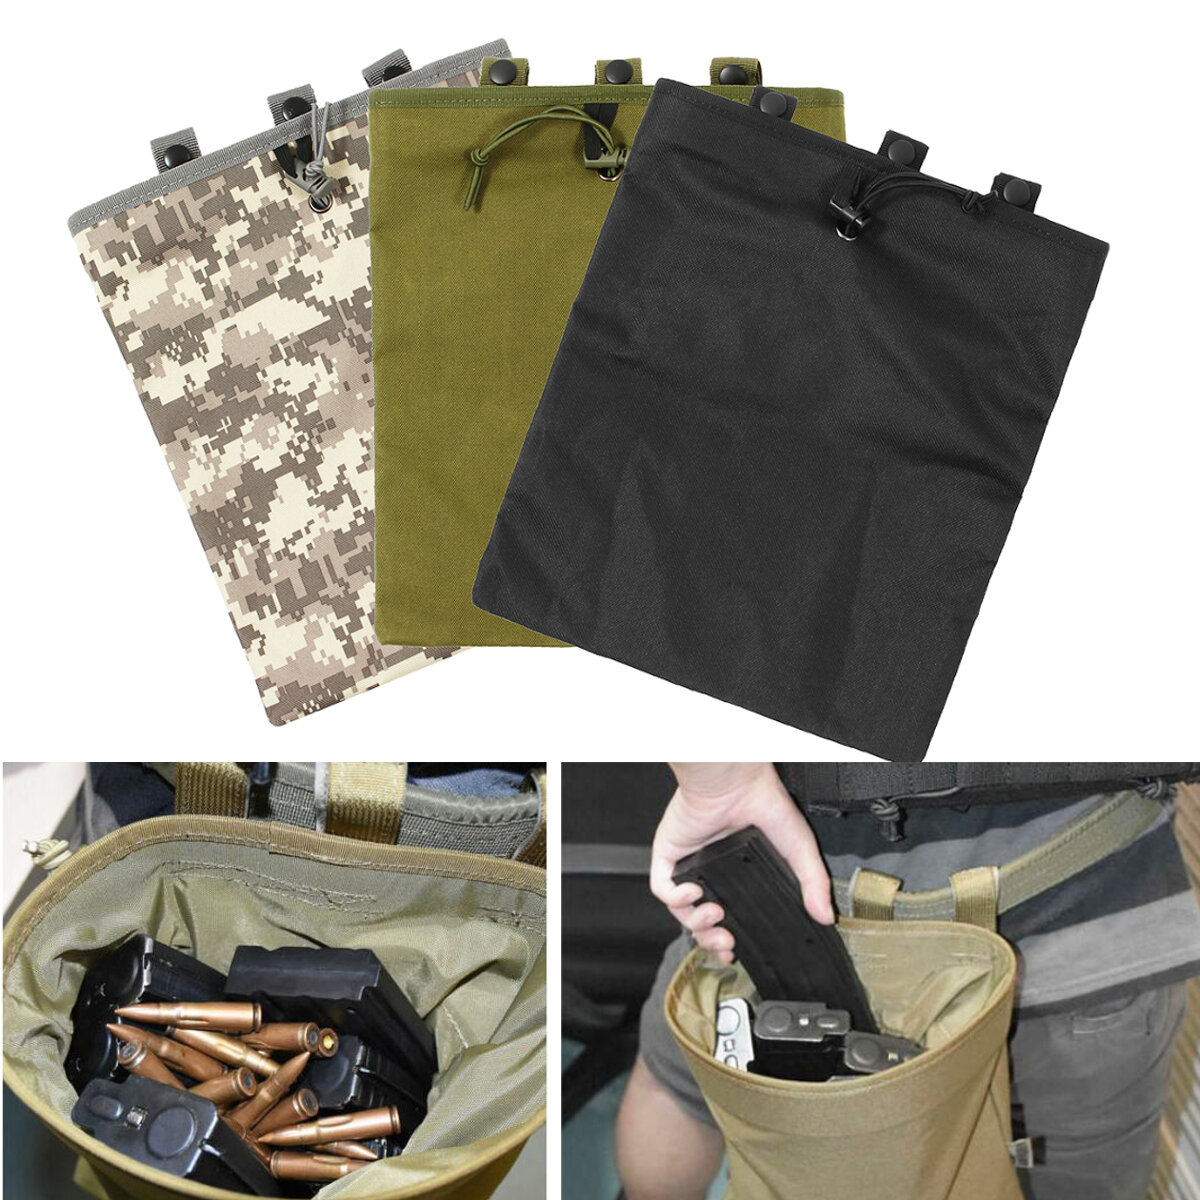 Tactische tas van 30x25cm van Oxford-stof met houder voor tijdschriften en munitietas voor jacht en visserij.